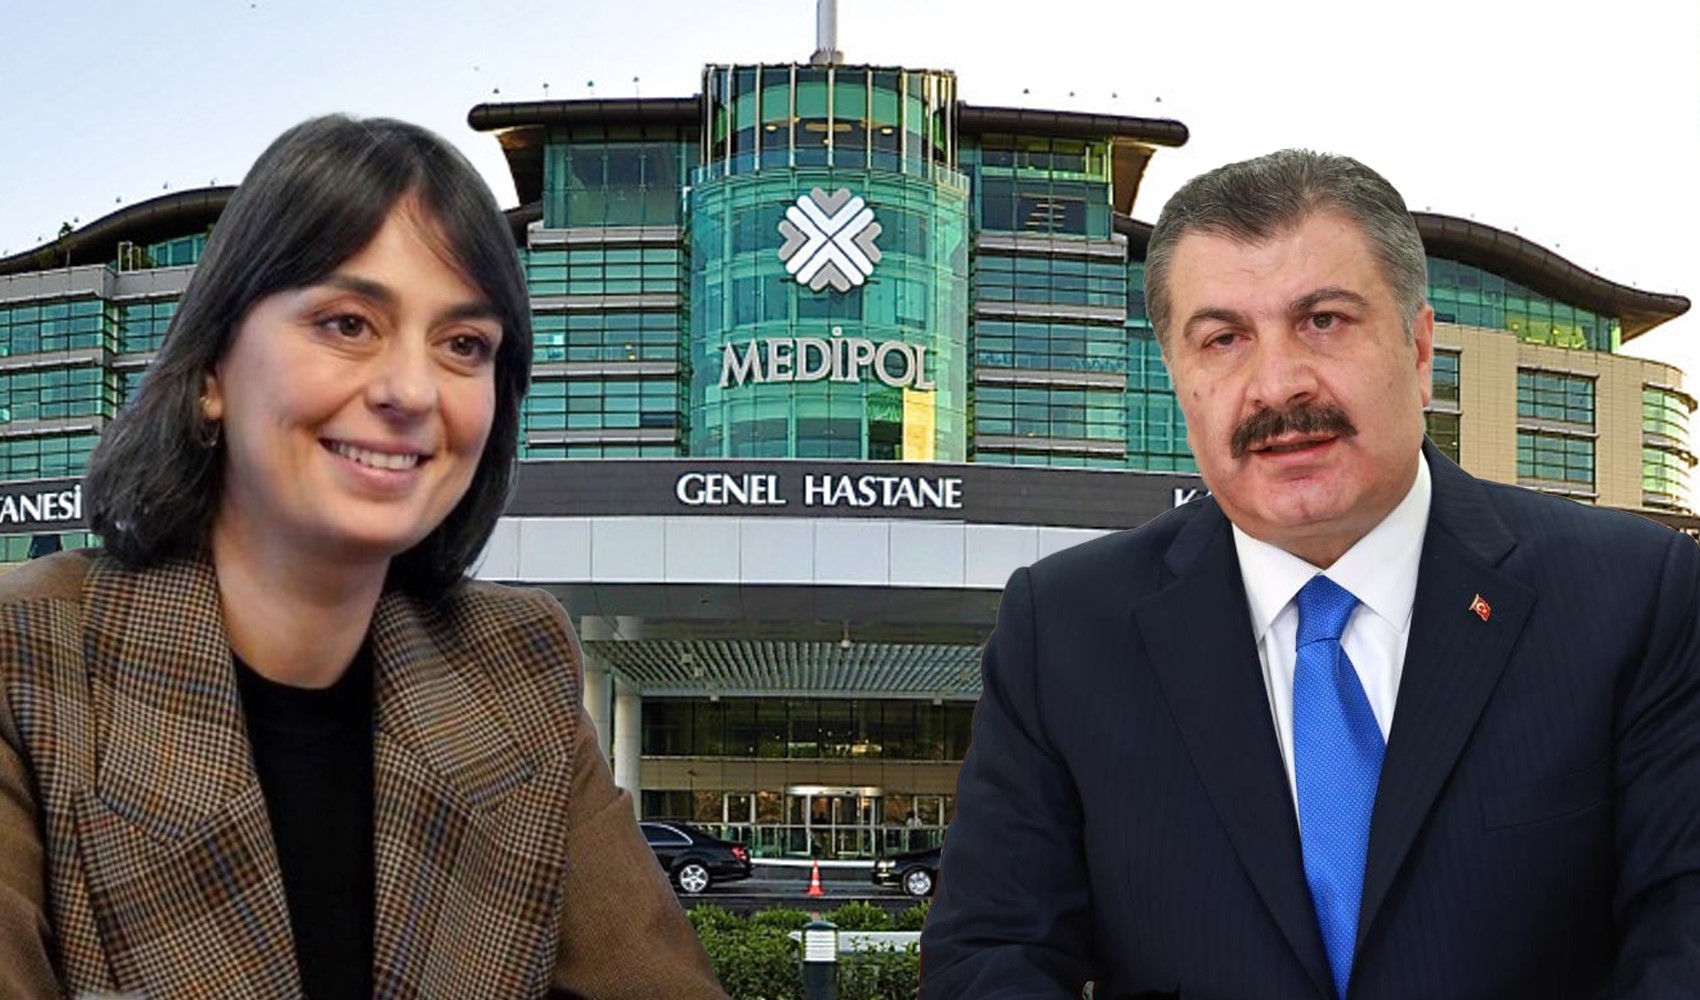 CHP’li Üsküdar Belediyesi, Fahrettin Koca'nın kurduğu Medipol’ün inşaatını durdurdu